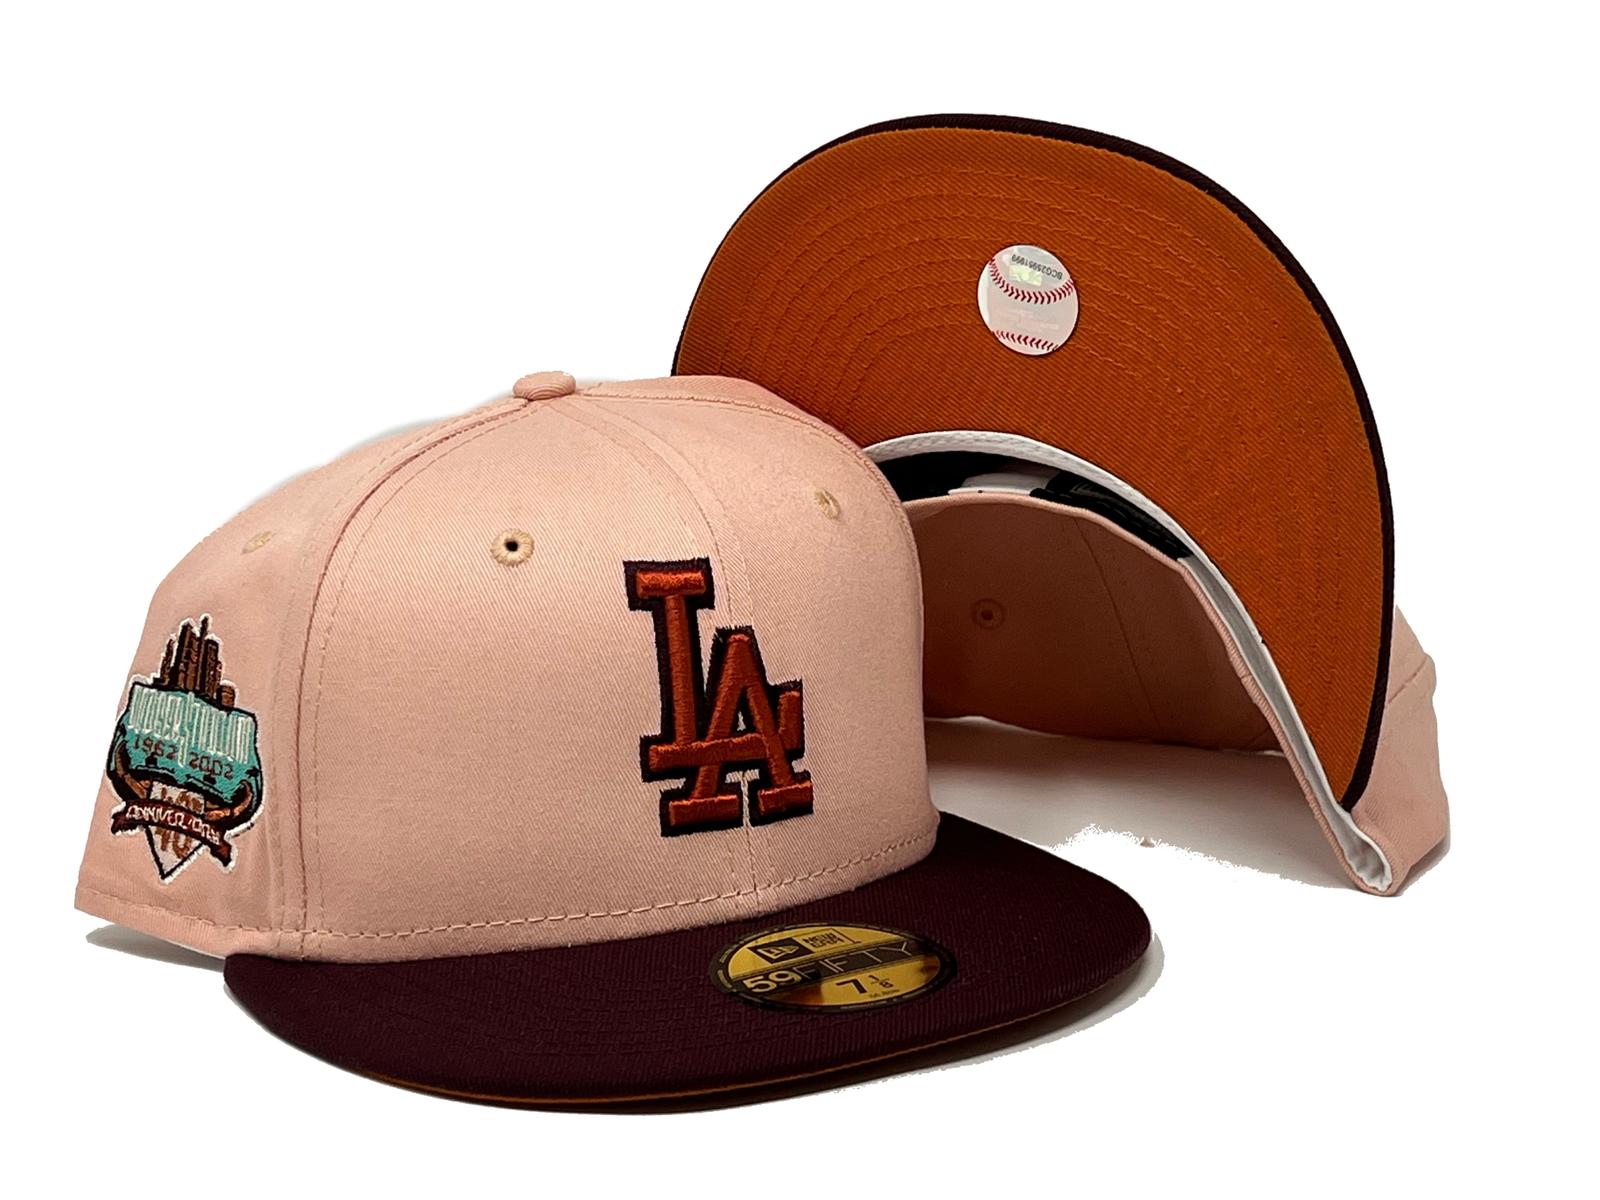 8 Best La dodgers hat ideas  dodger hats, fitted hats, streetwear hats